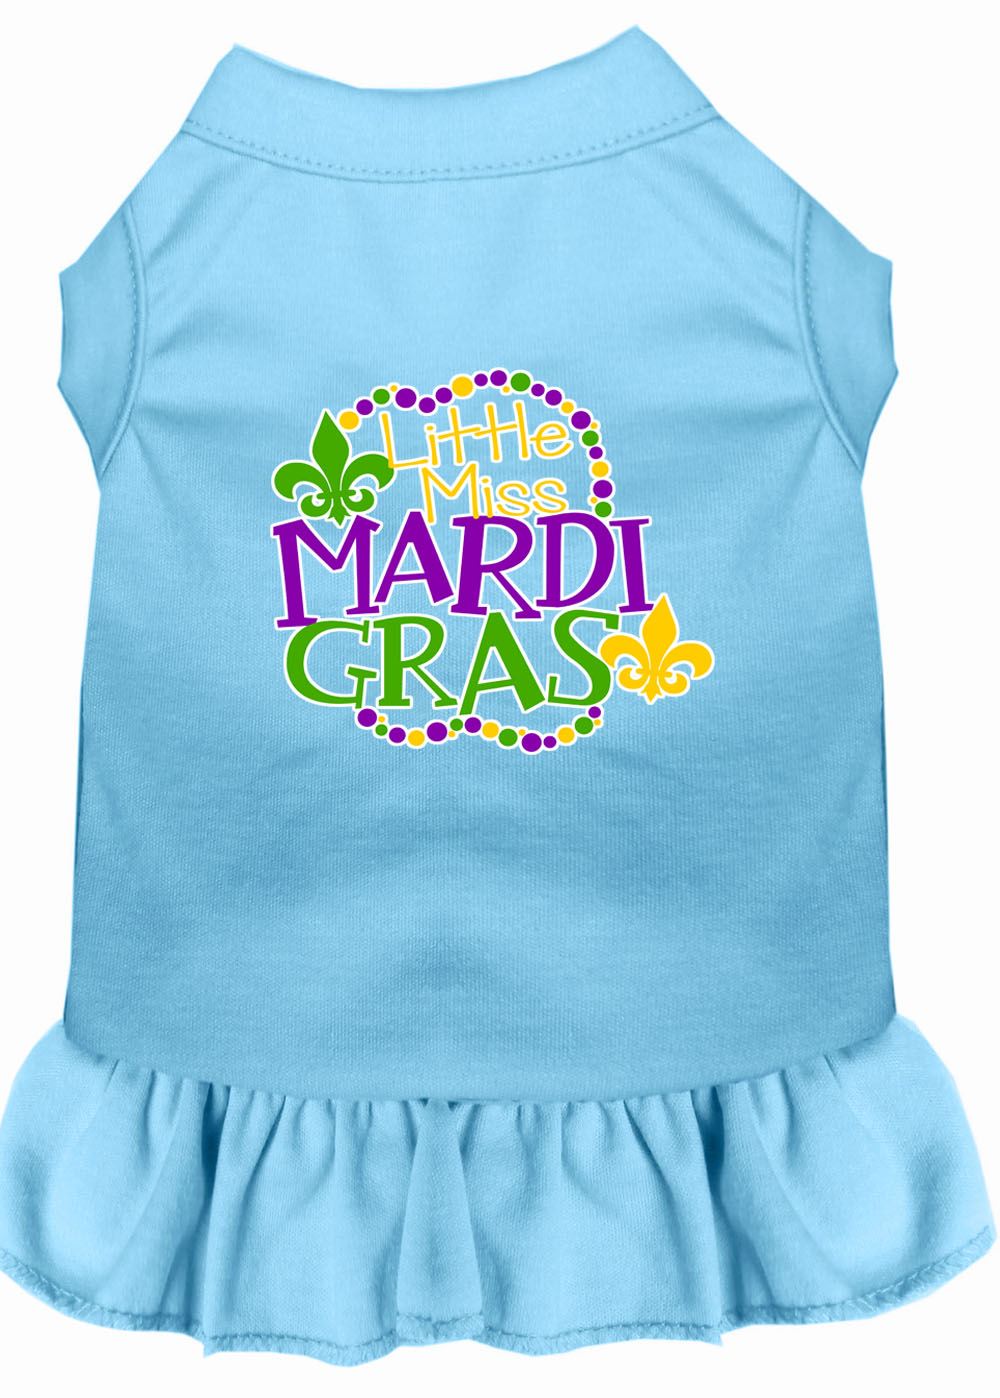 Miss Mardi Gras Screen Print Mardi Gras Dog Dress Baby Blue Lg